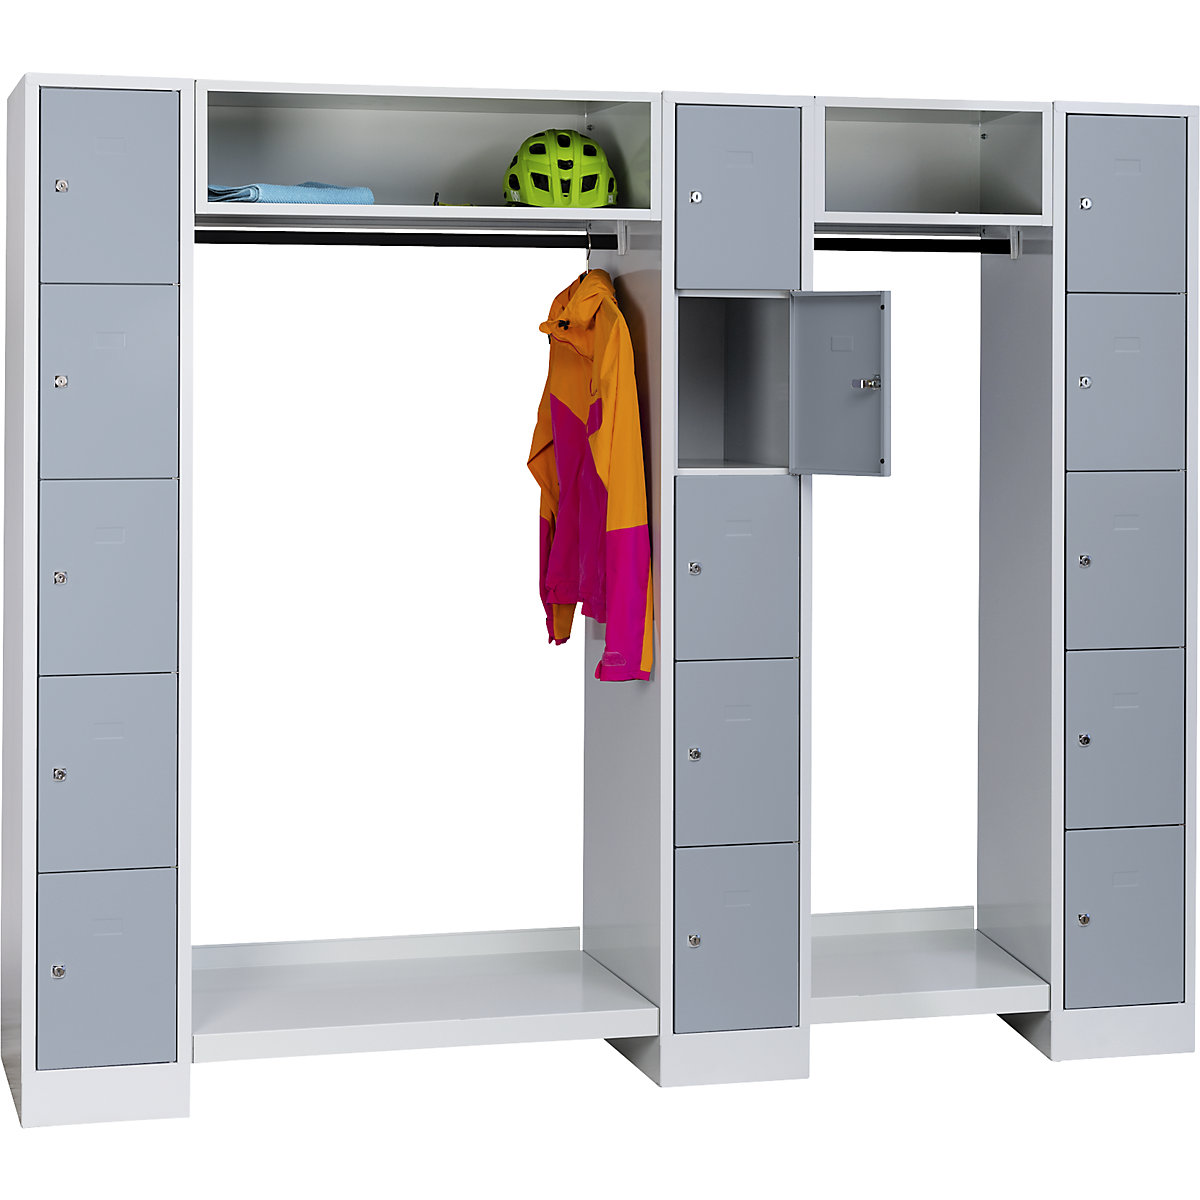 Sistema de compartimentos roperos bajo llave – Wolf (Imagen del producto 2)-1